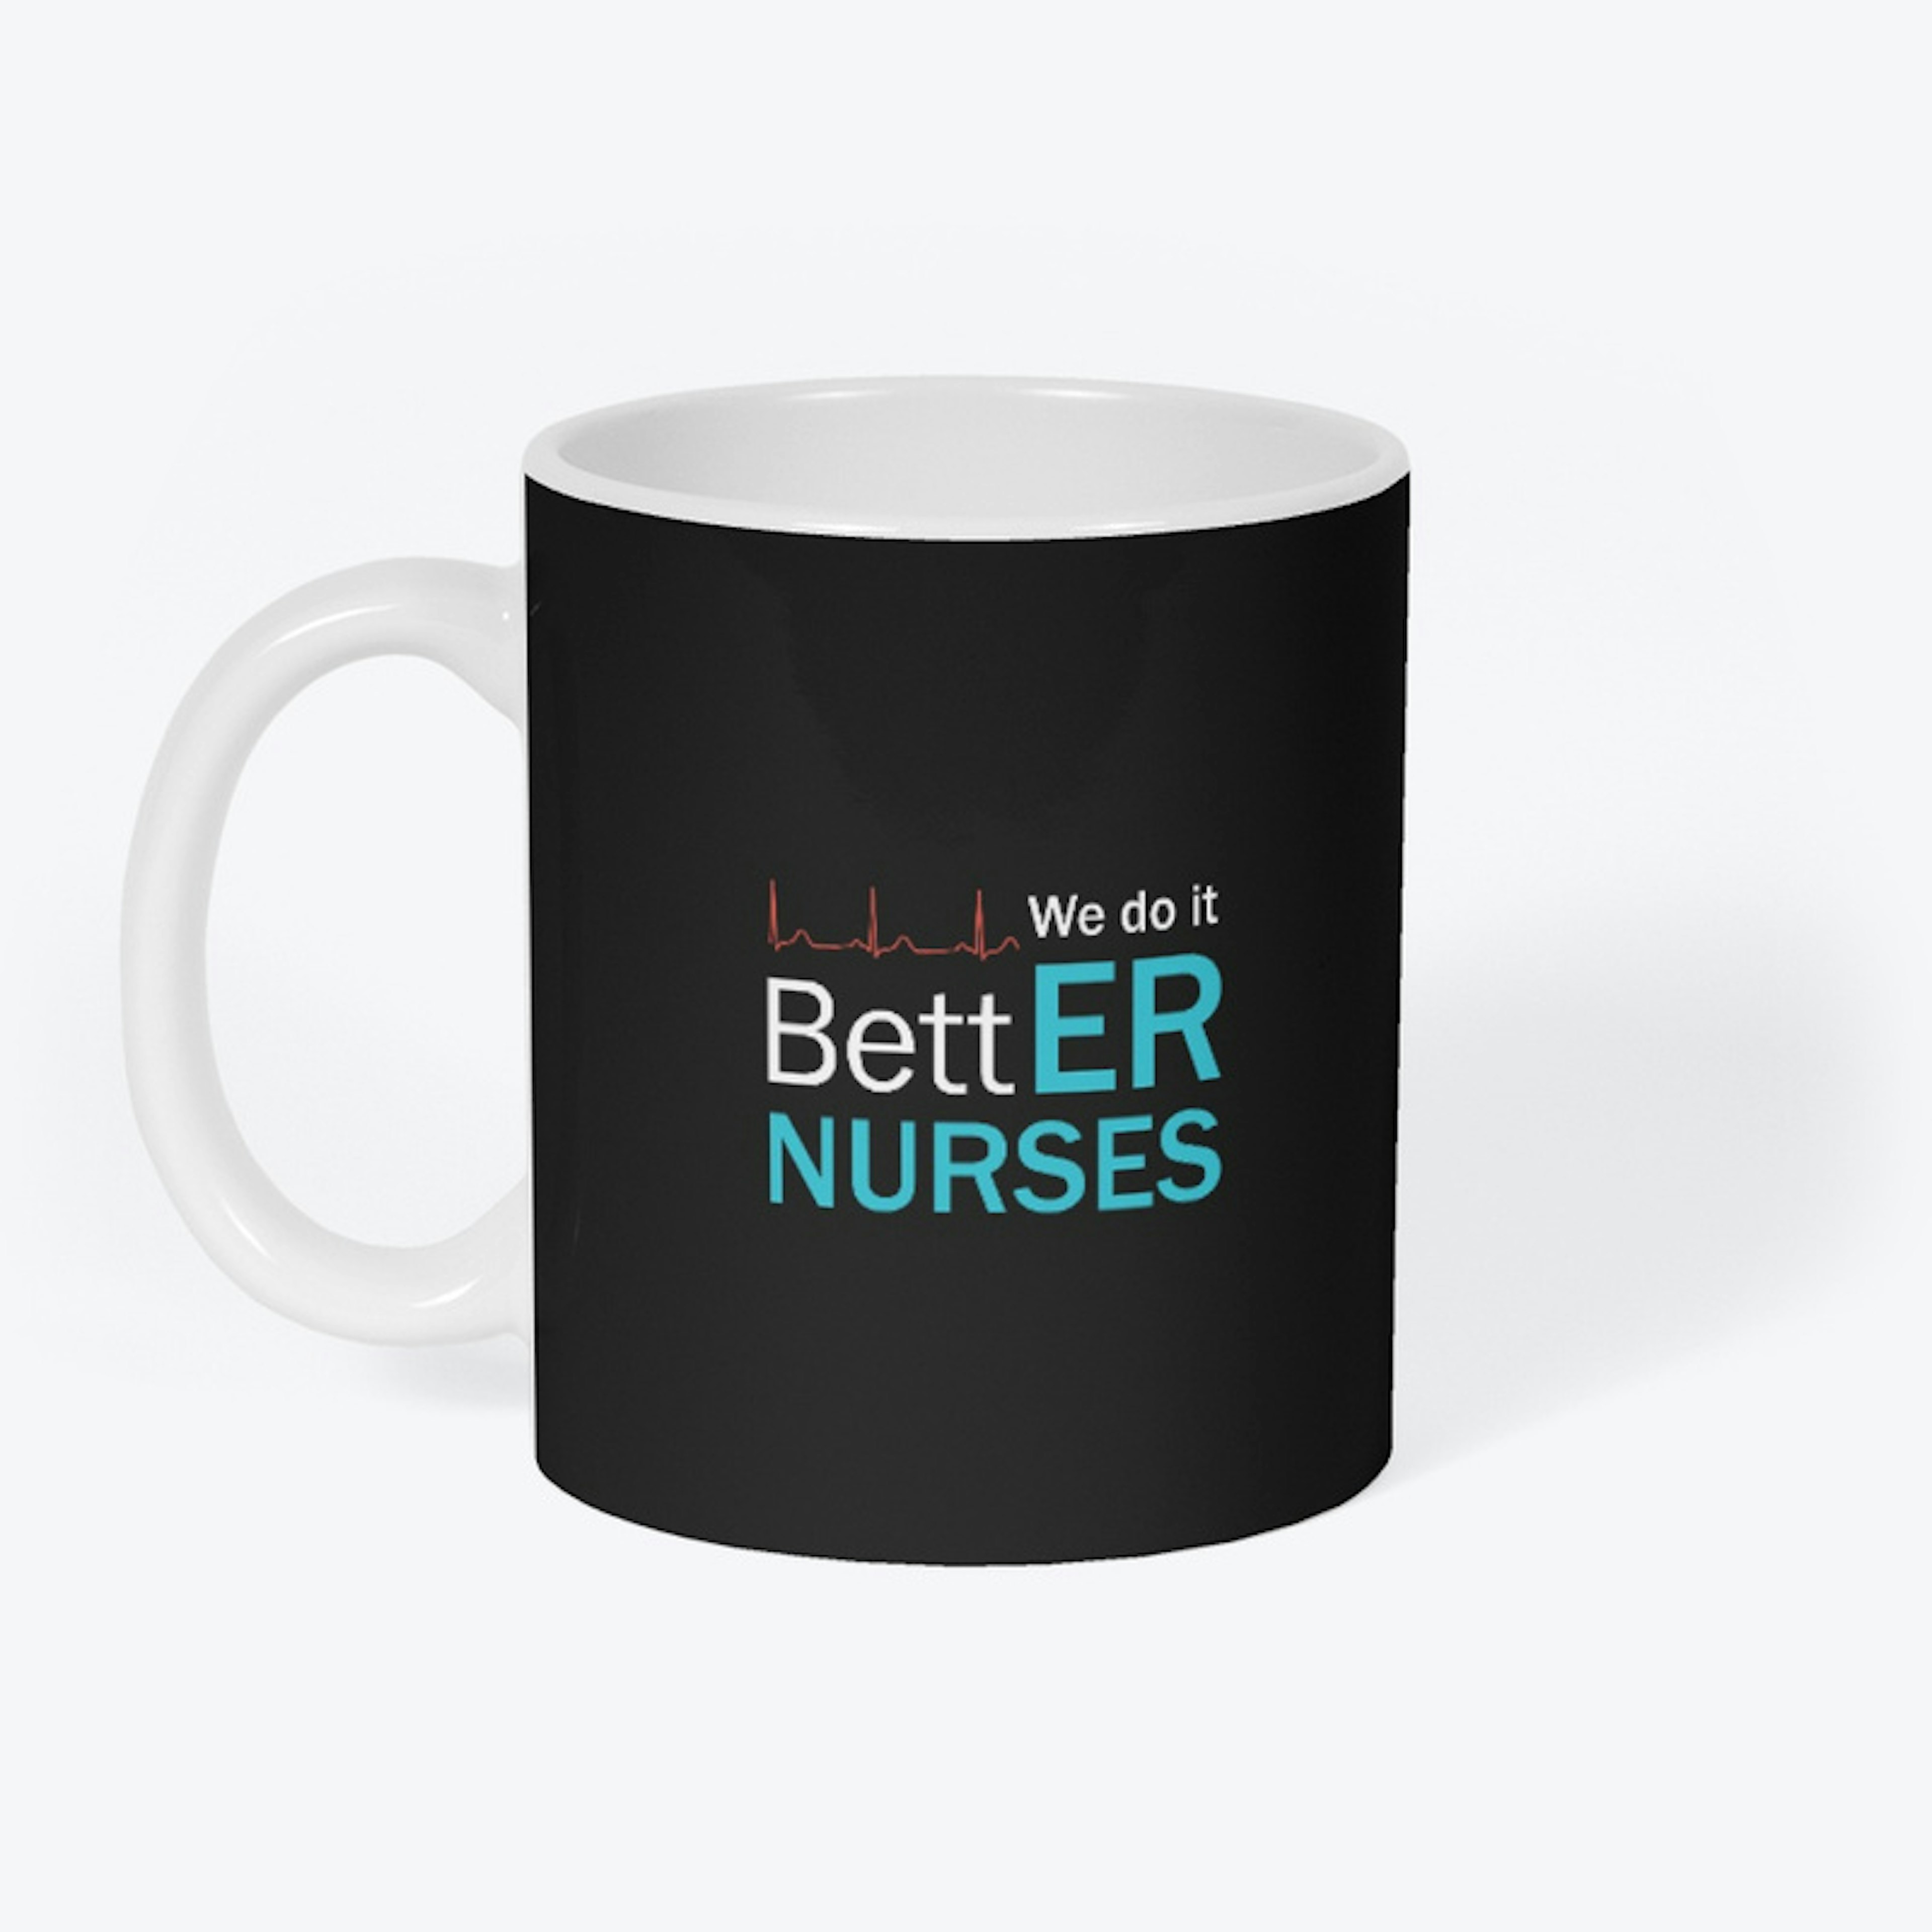 ER Nurses Do it BettER